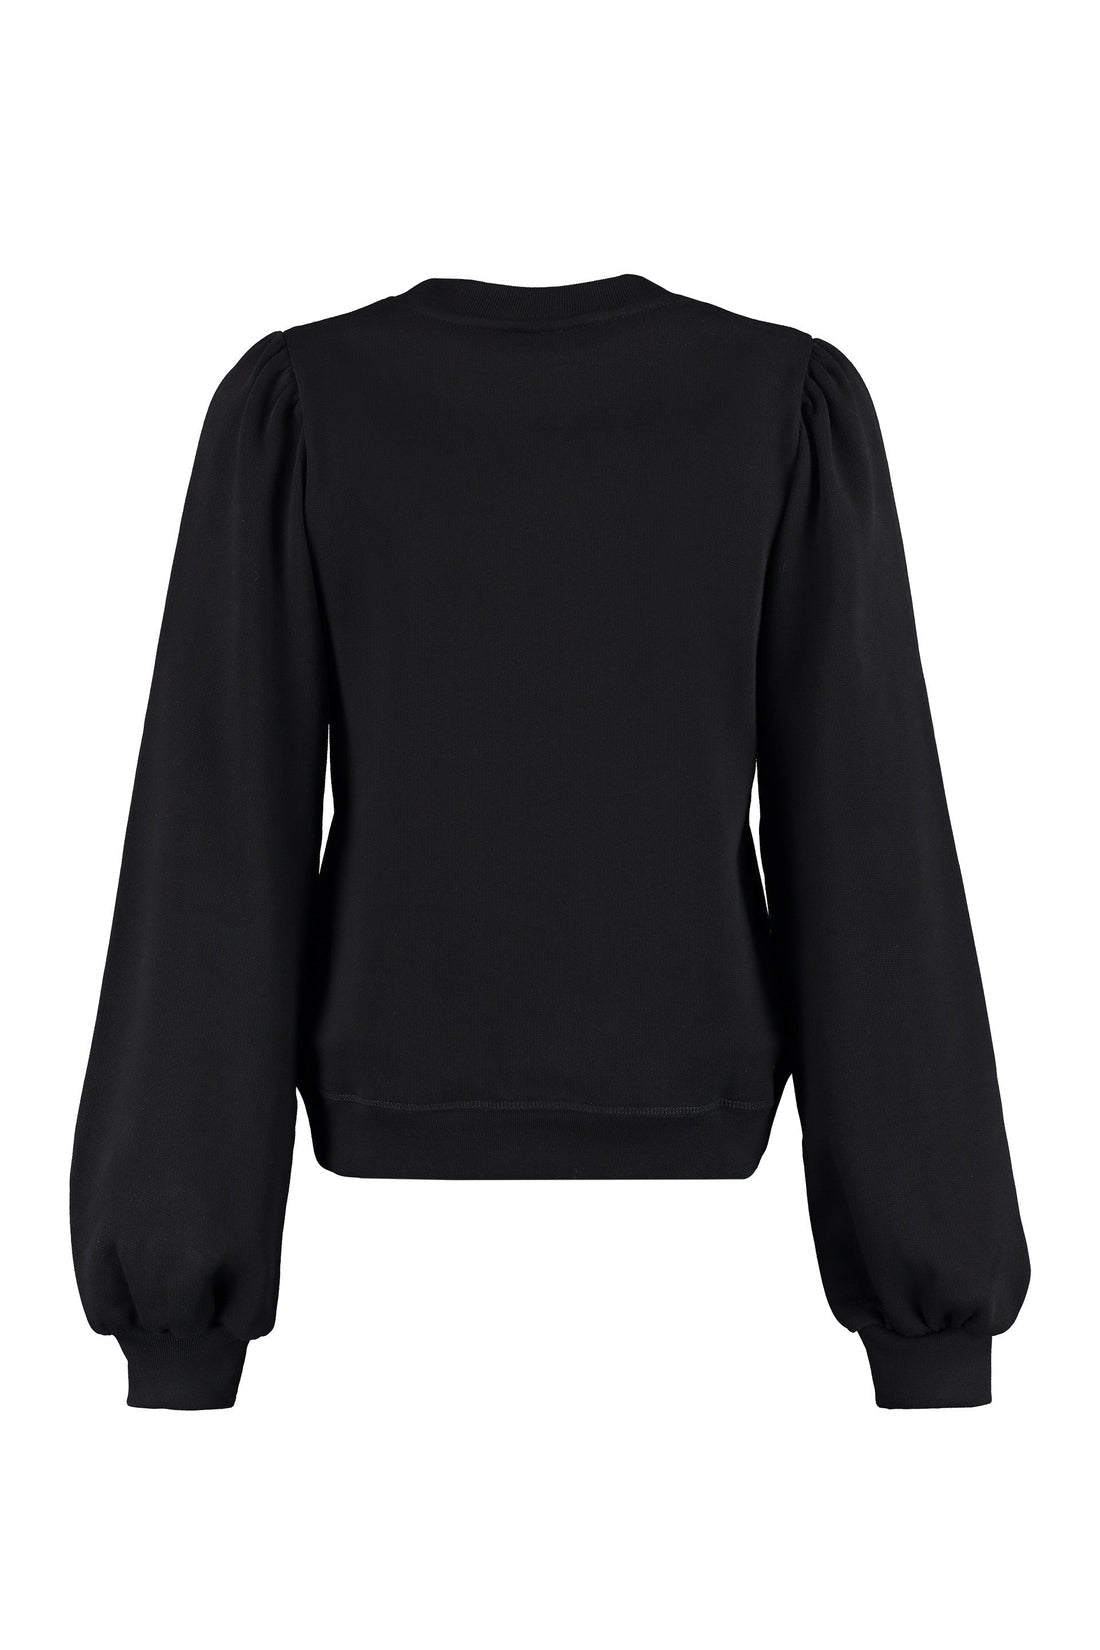 GANNI-OUTLET-SALE-Software cotton sweatshirt-ARCHIVIST